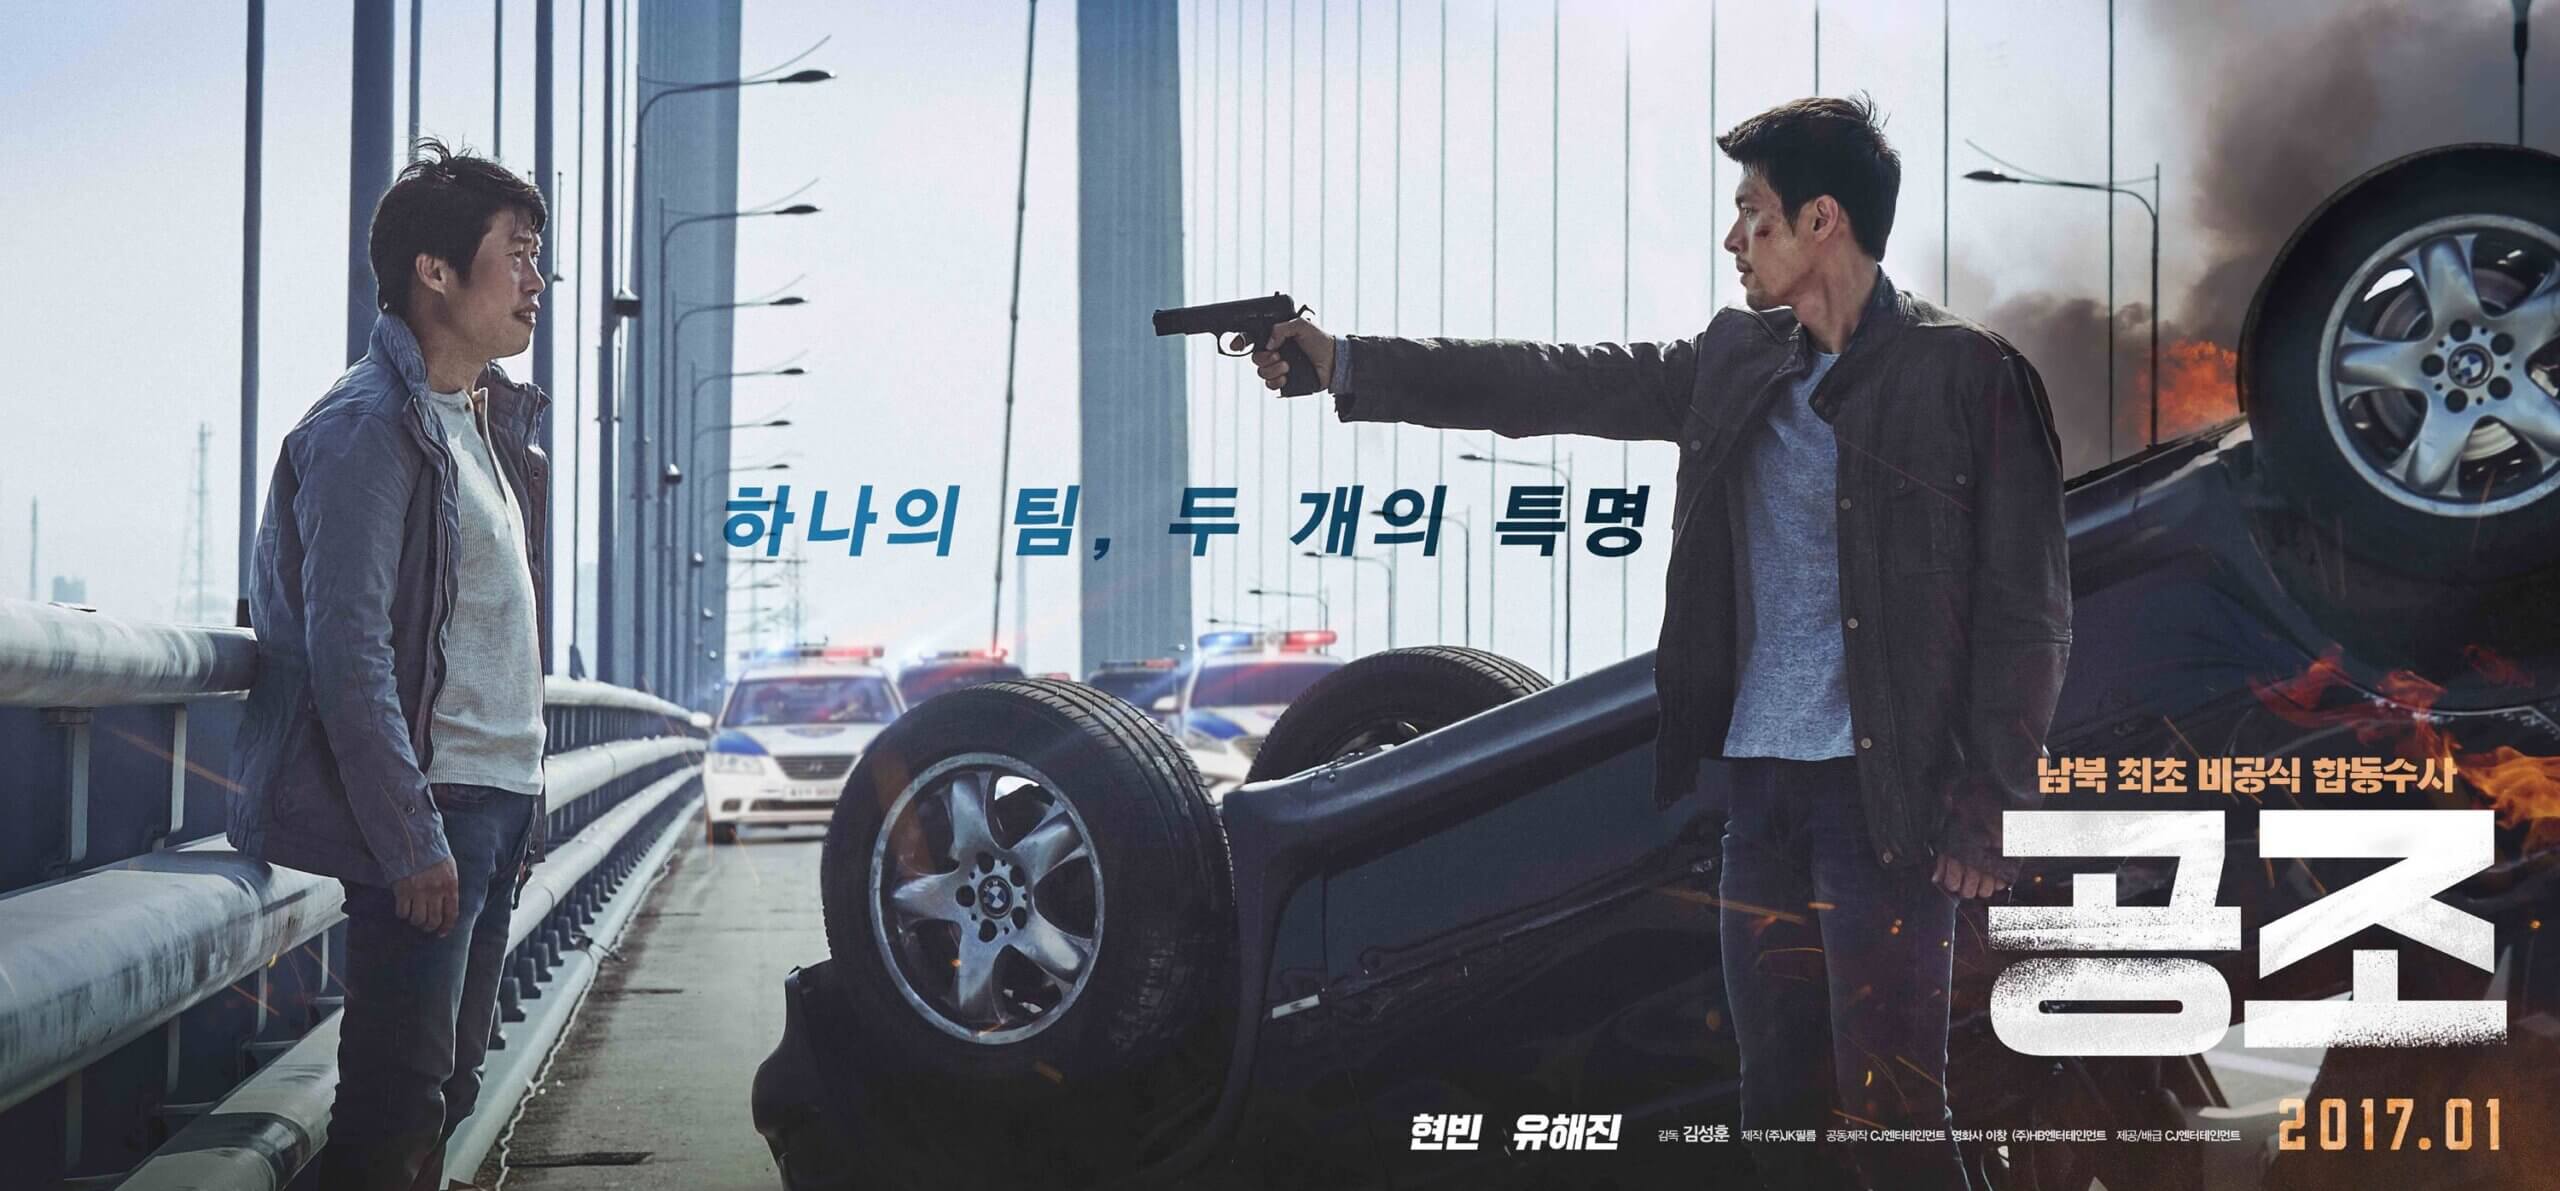 Confidential-Assignment-Korean-Movie